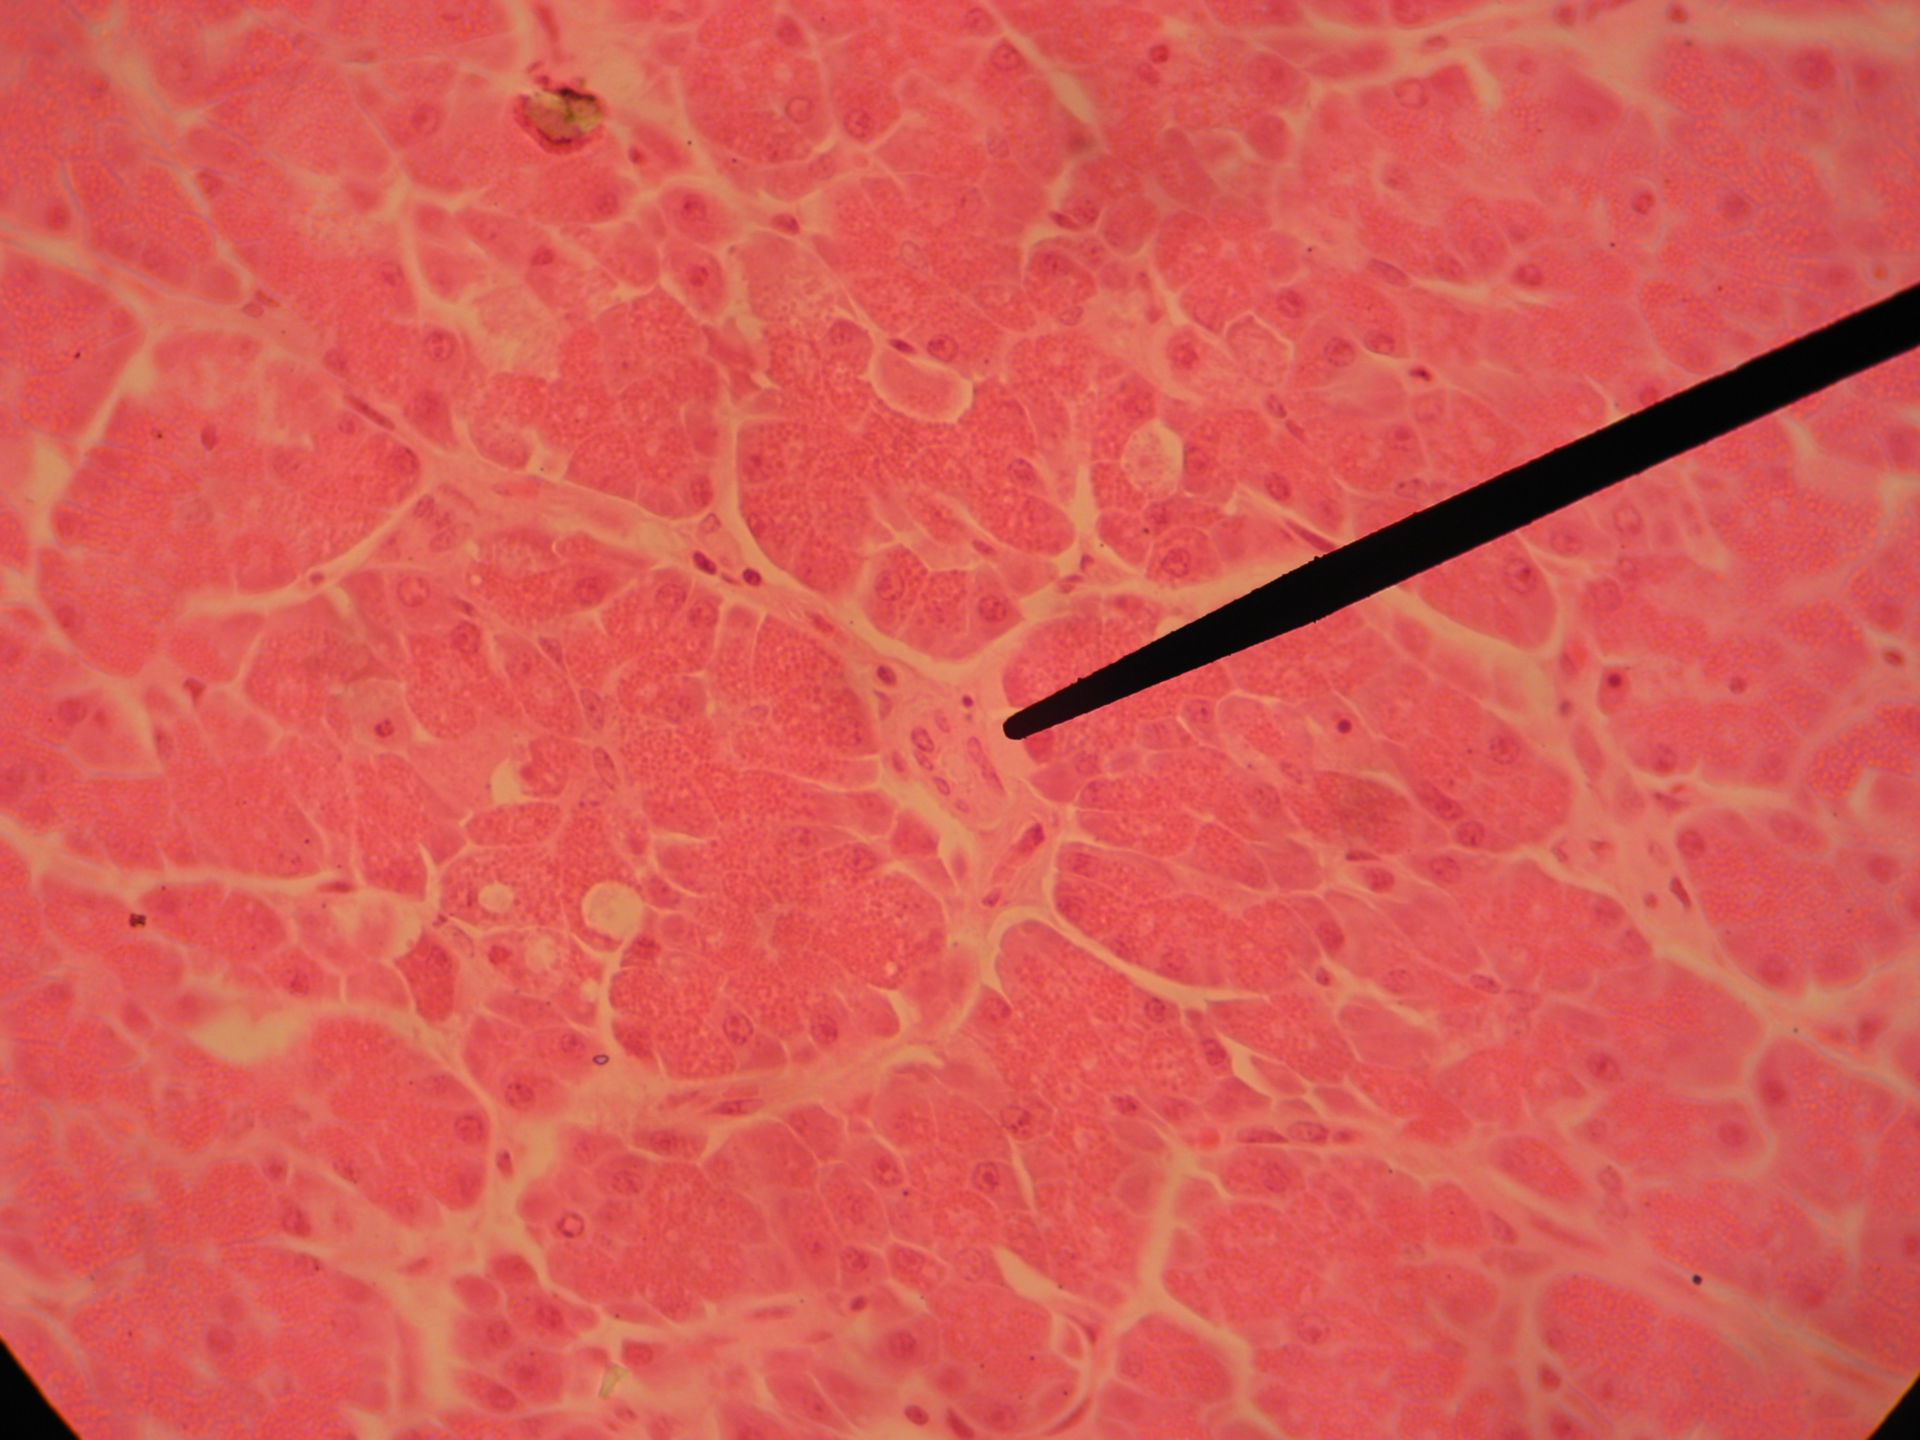 Pancreas of a sheep (2) - Ductulus intralobularis